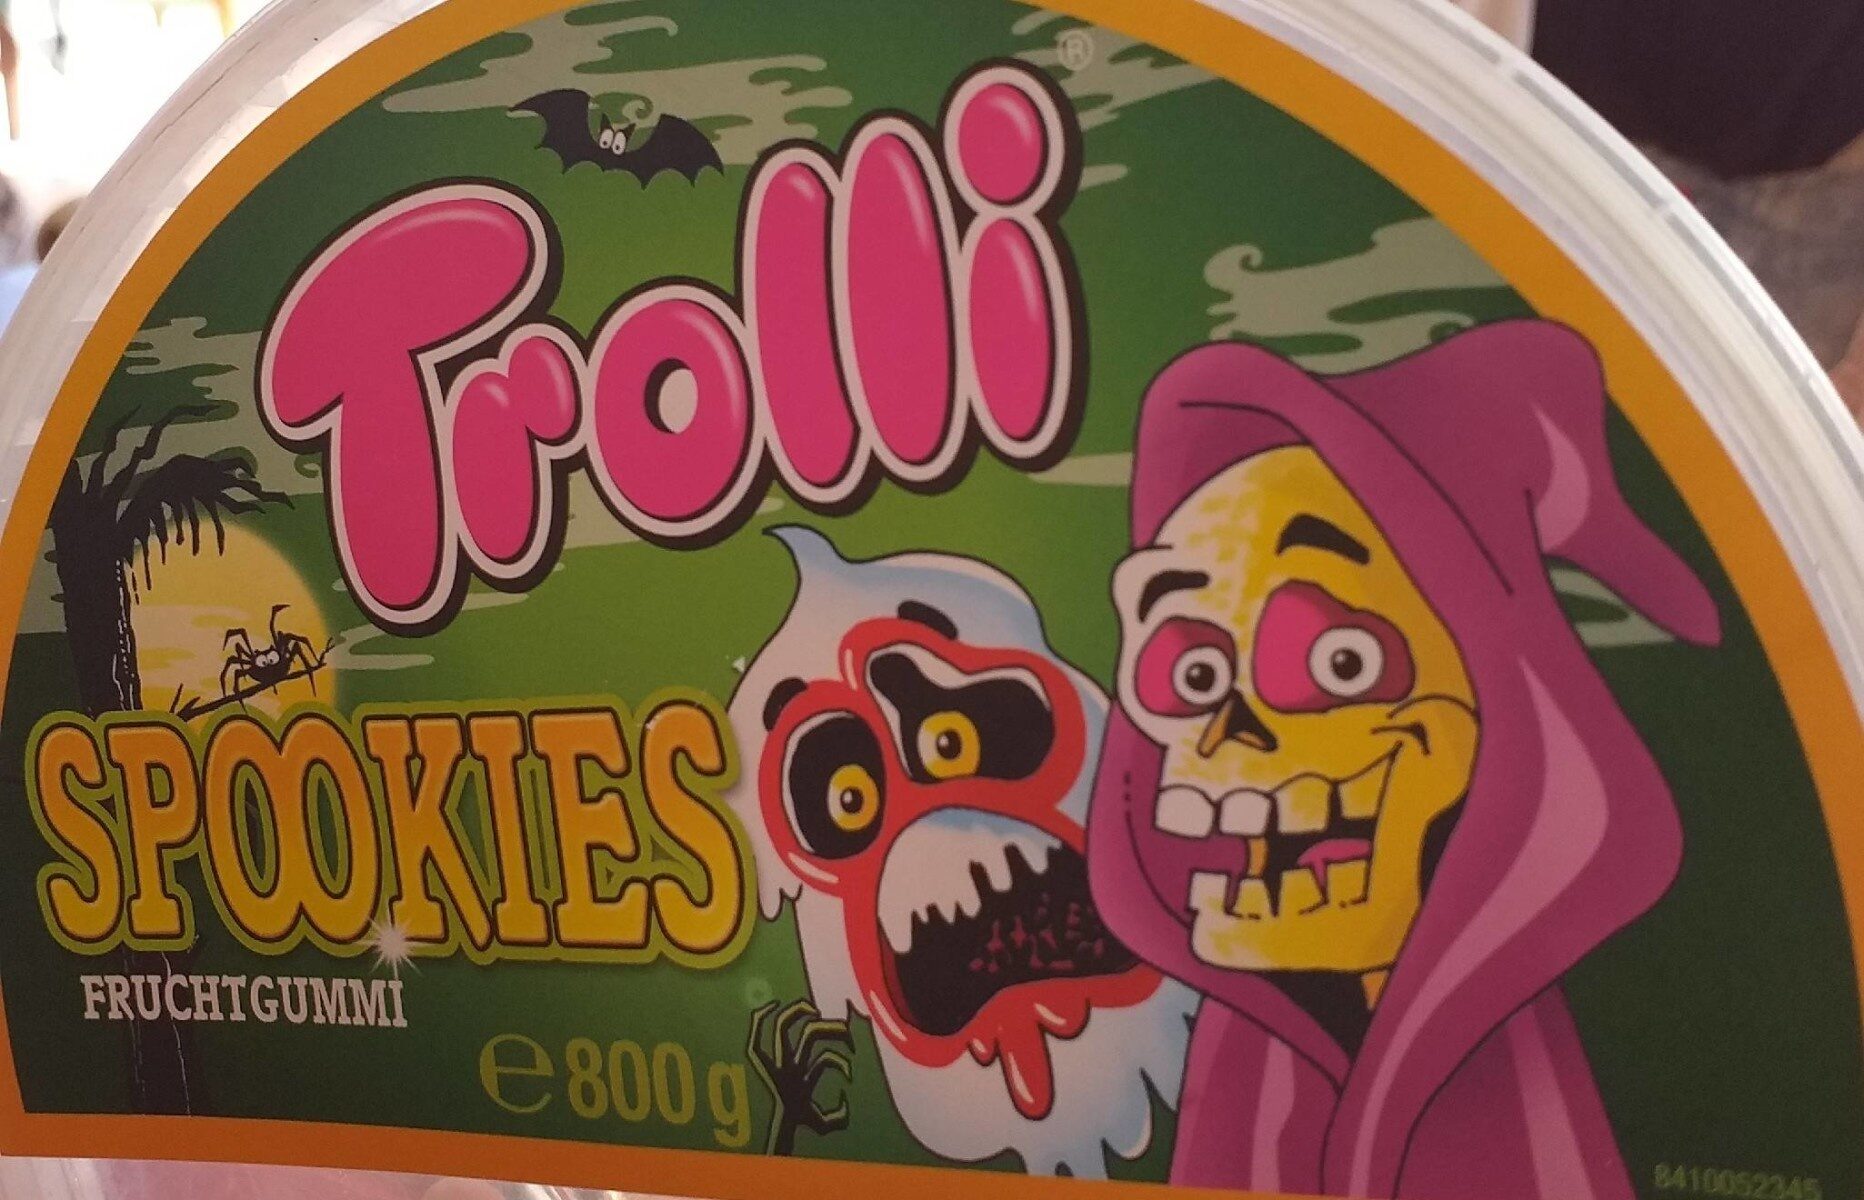 Troll Spookies - Información nutricional